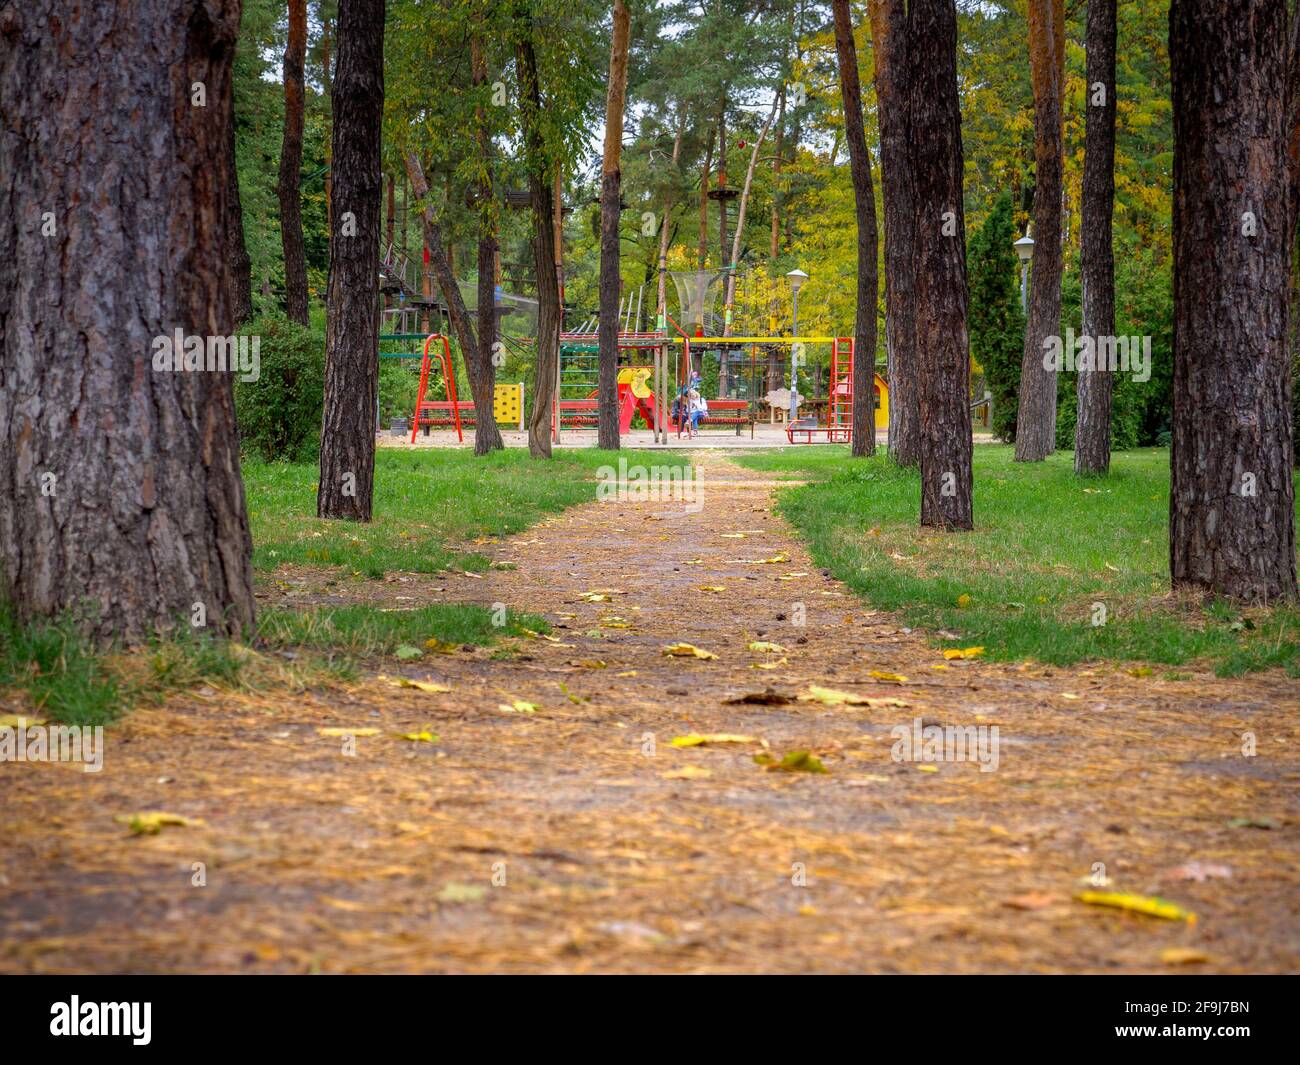 Vue sur un sentier de parc avec des feuilles jaunes et des aiguilles de sapin menant à une aire de jeux pour enfants colorée et un parc à cordes. Jouer, marcher et se reposer. Banque D'Images